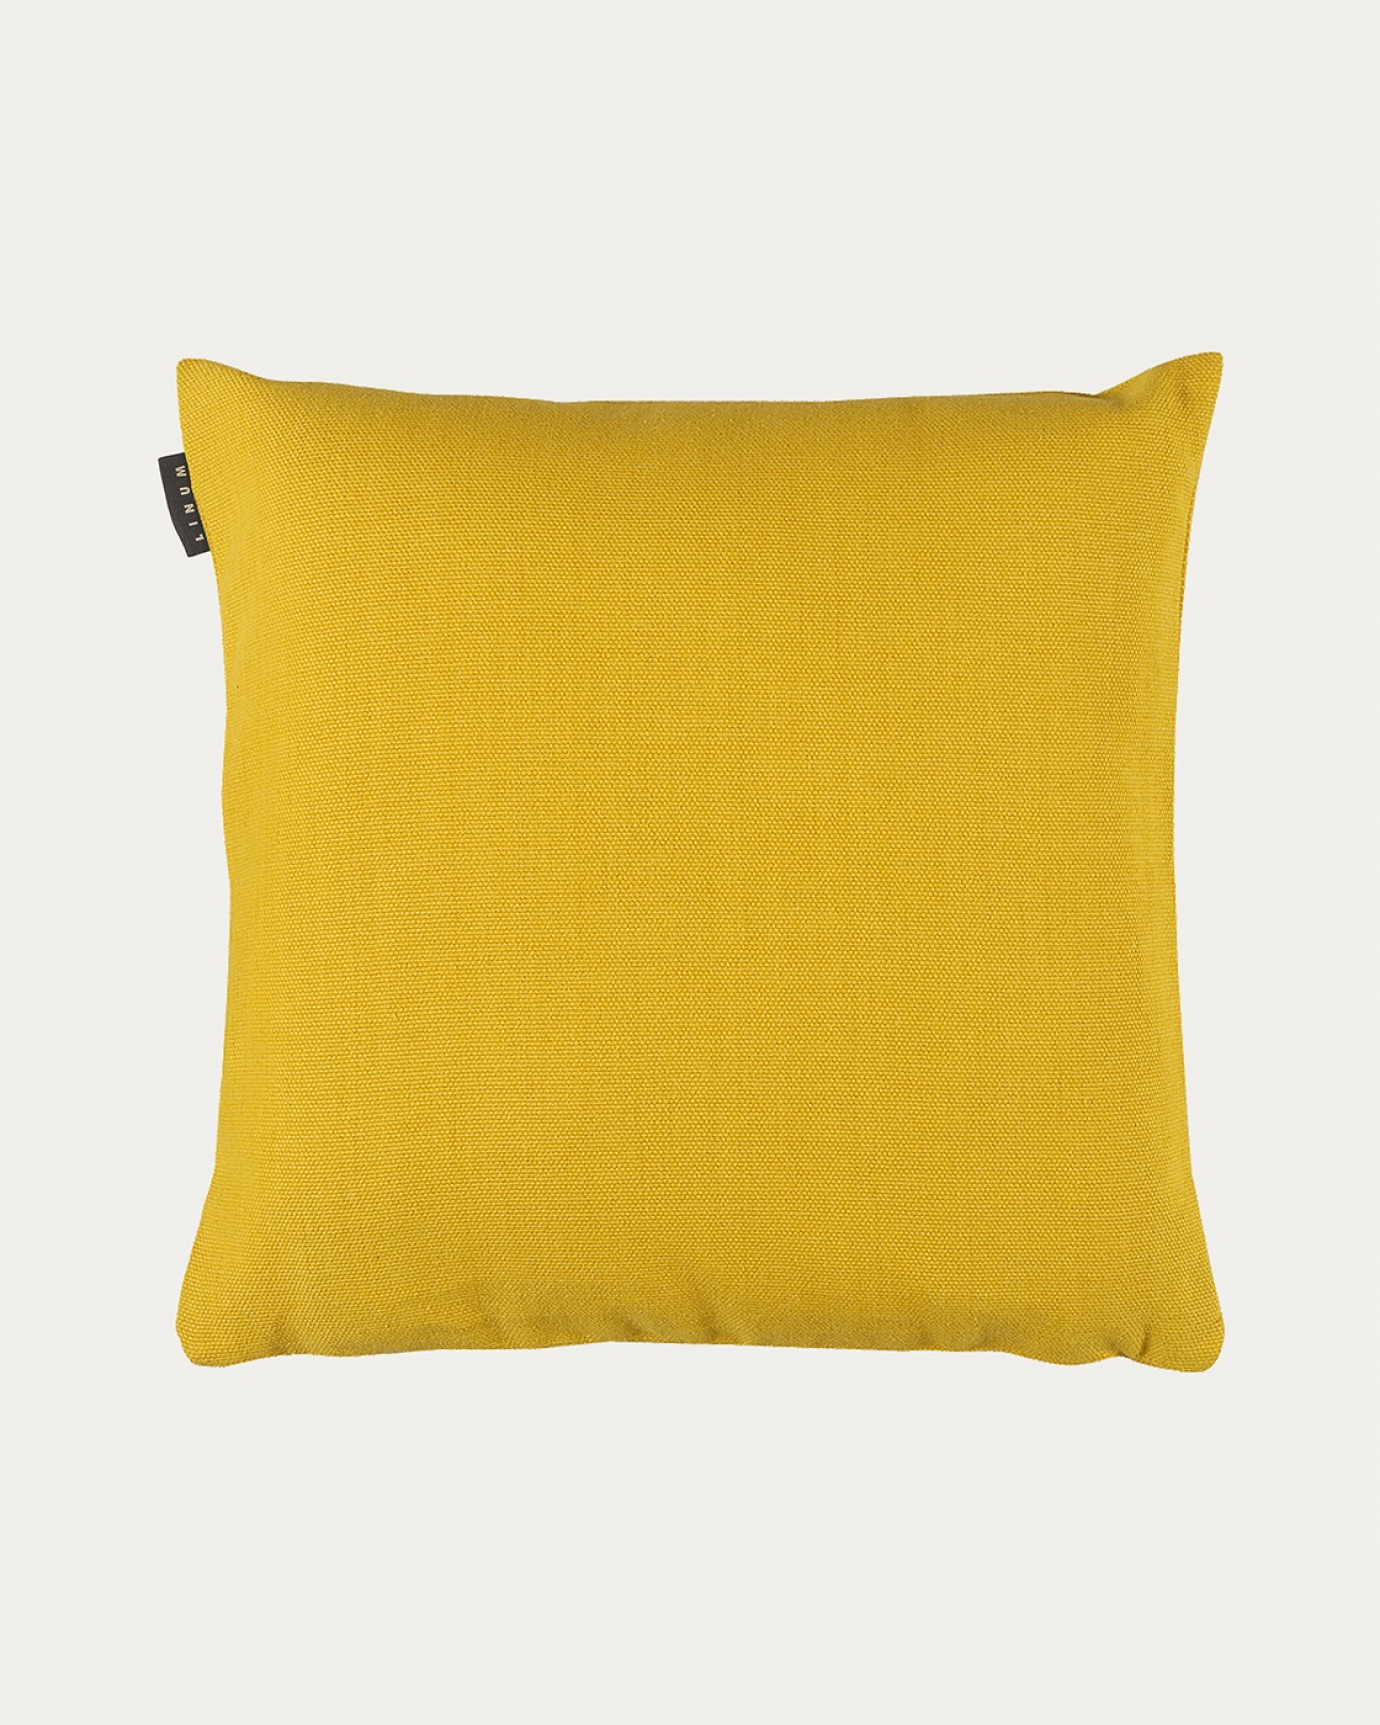 Immagine prodotto giallo mandarino PEPPER copricuscini in morbido cotone di LINUM DESIGN. Facile da lavare e resistente per generazioni. Dimensioni 50x50 cm.